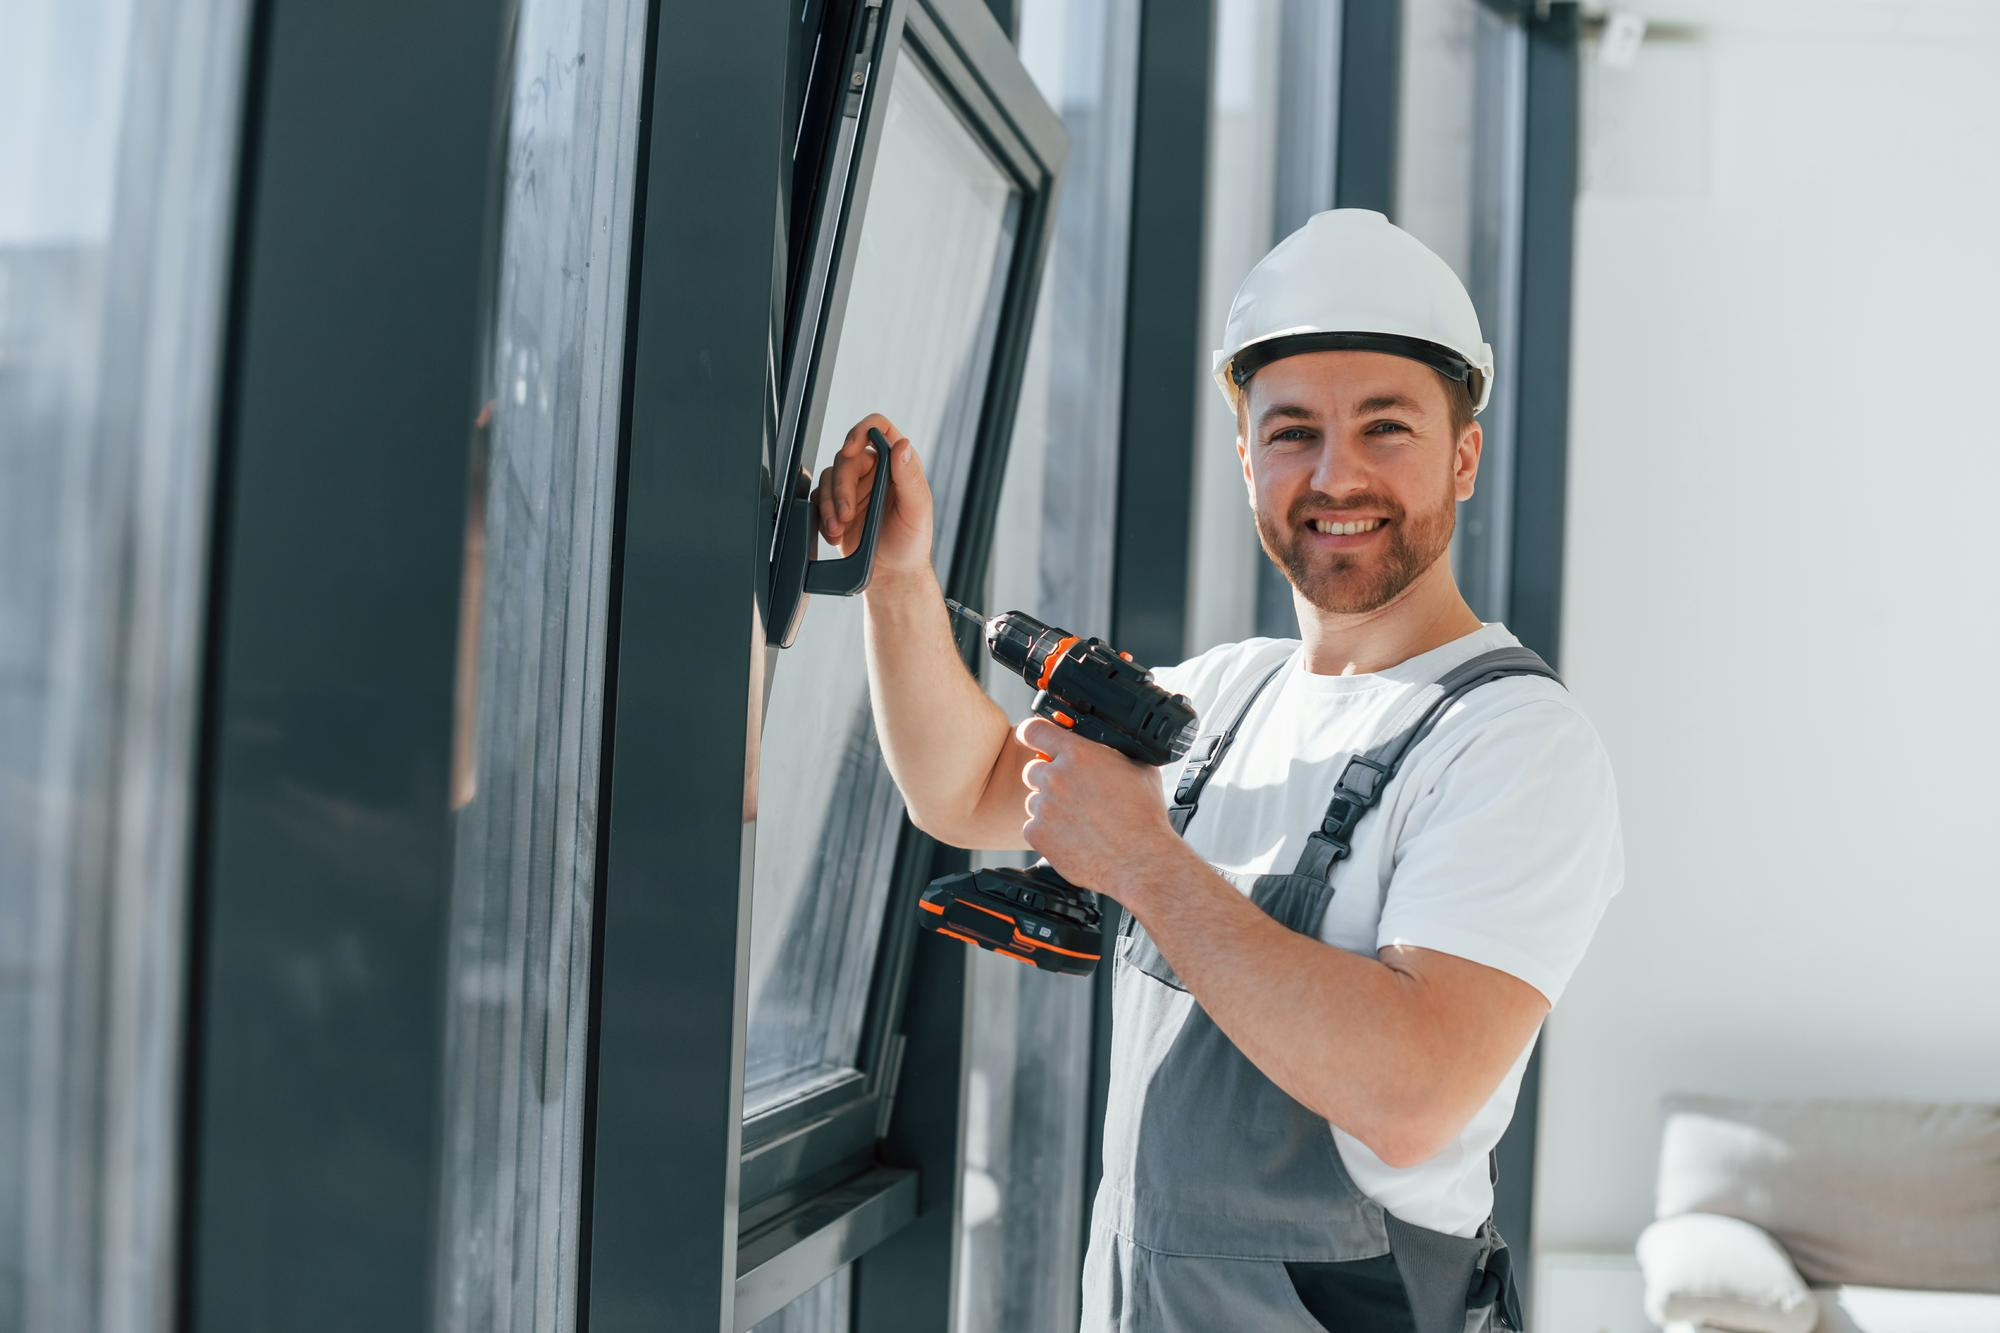 Need Door & Window Repair Services by An Expert? Find A Professional Wood Door Contractor.